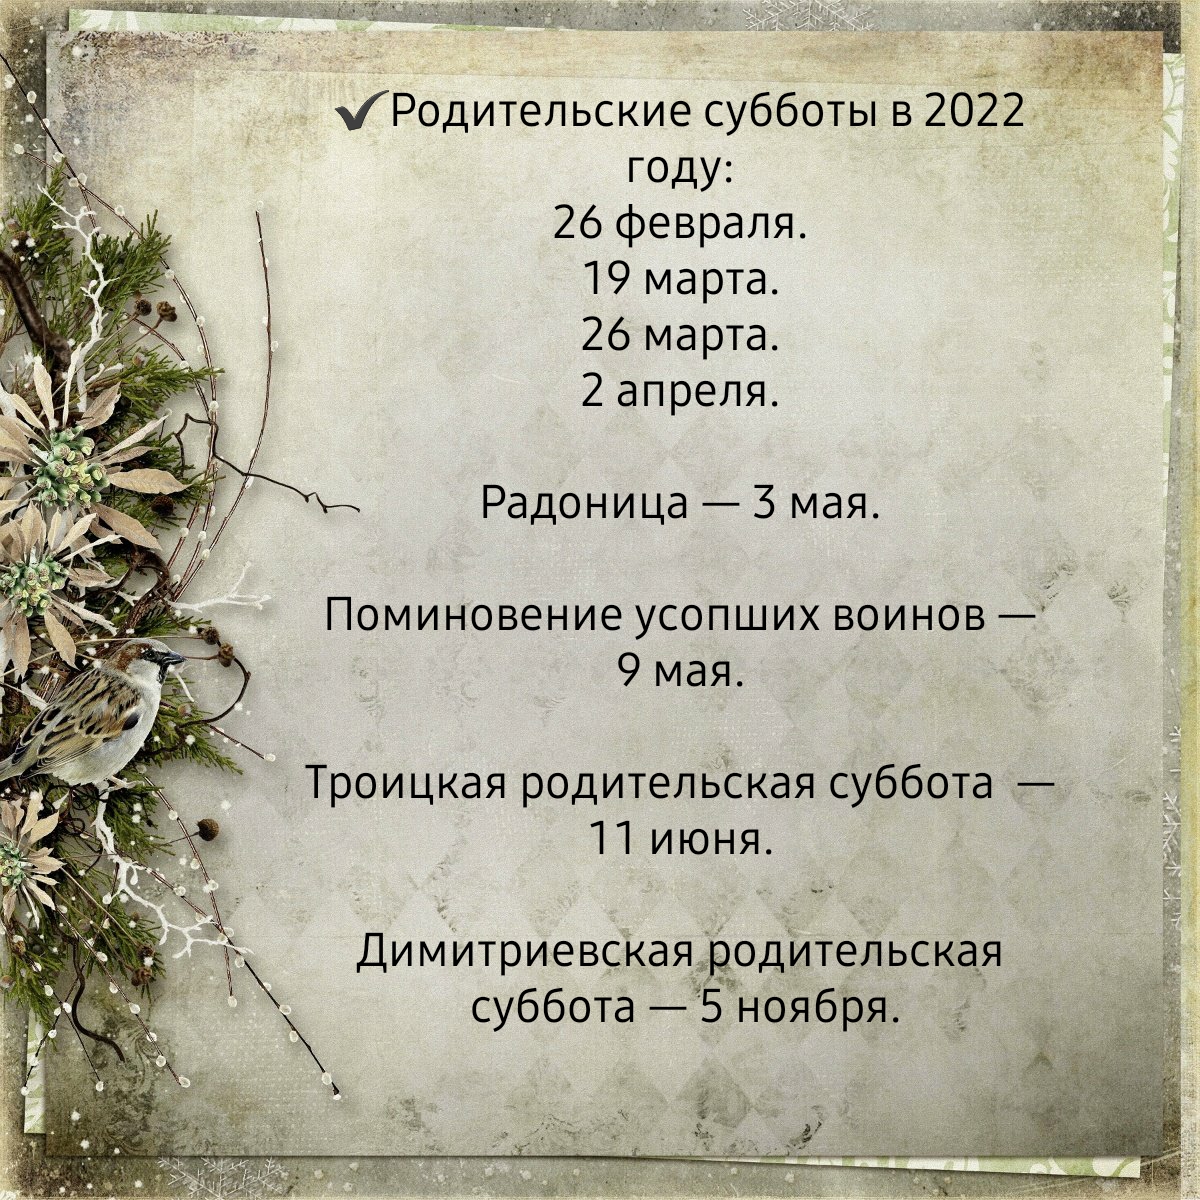 Дата пасхи в 2023. Родительские субботы в 2023 году православные поминальные. Родительская суббота в 2022. Родительские субботы в 2022 году. Православные родительские субботы в 2022.